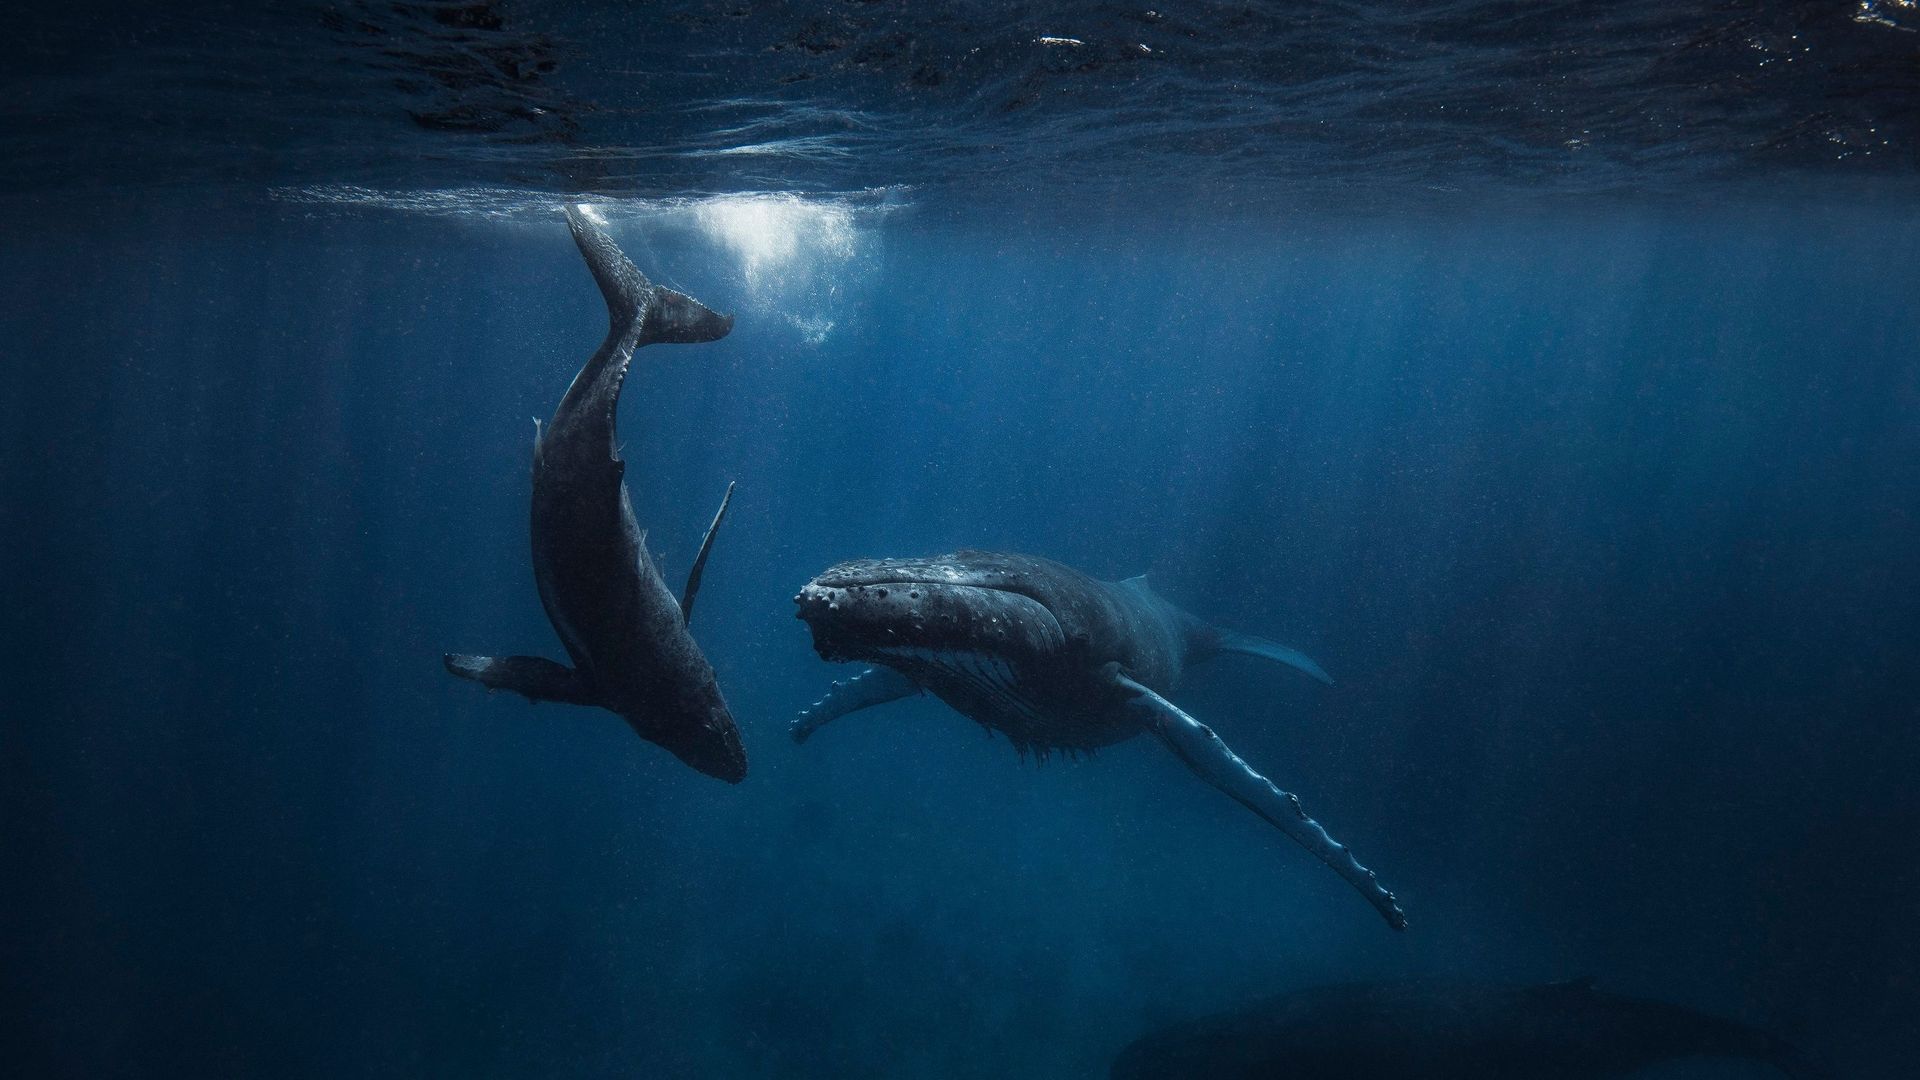 A la saison des amours, le chant des baleines s'est tu et c'est bon signe.